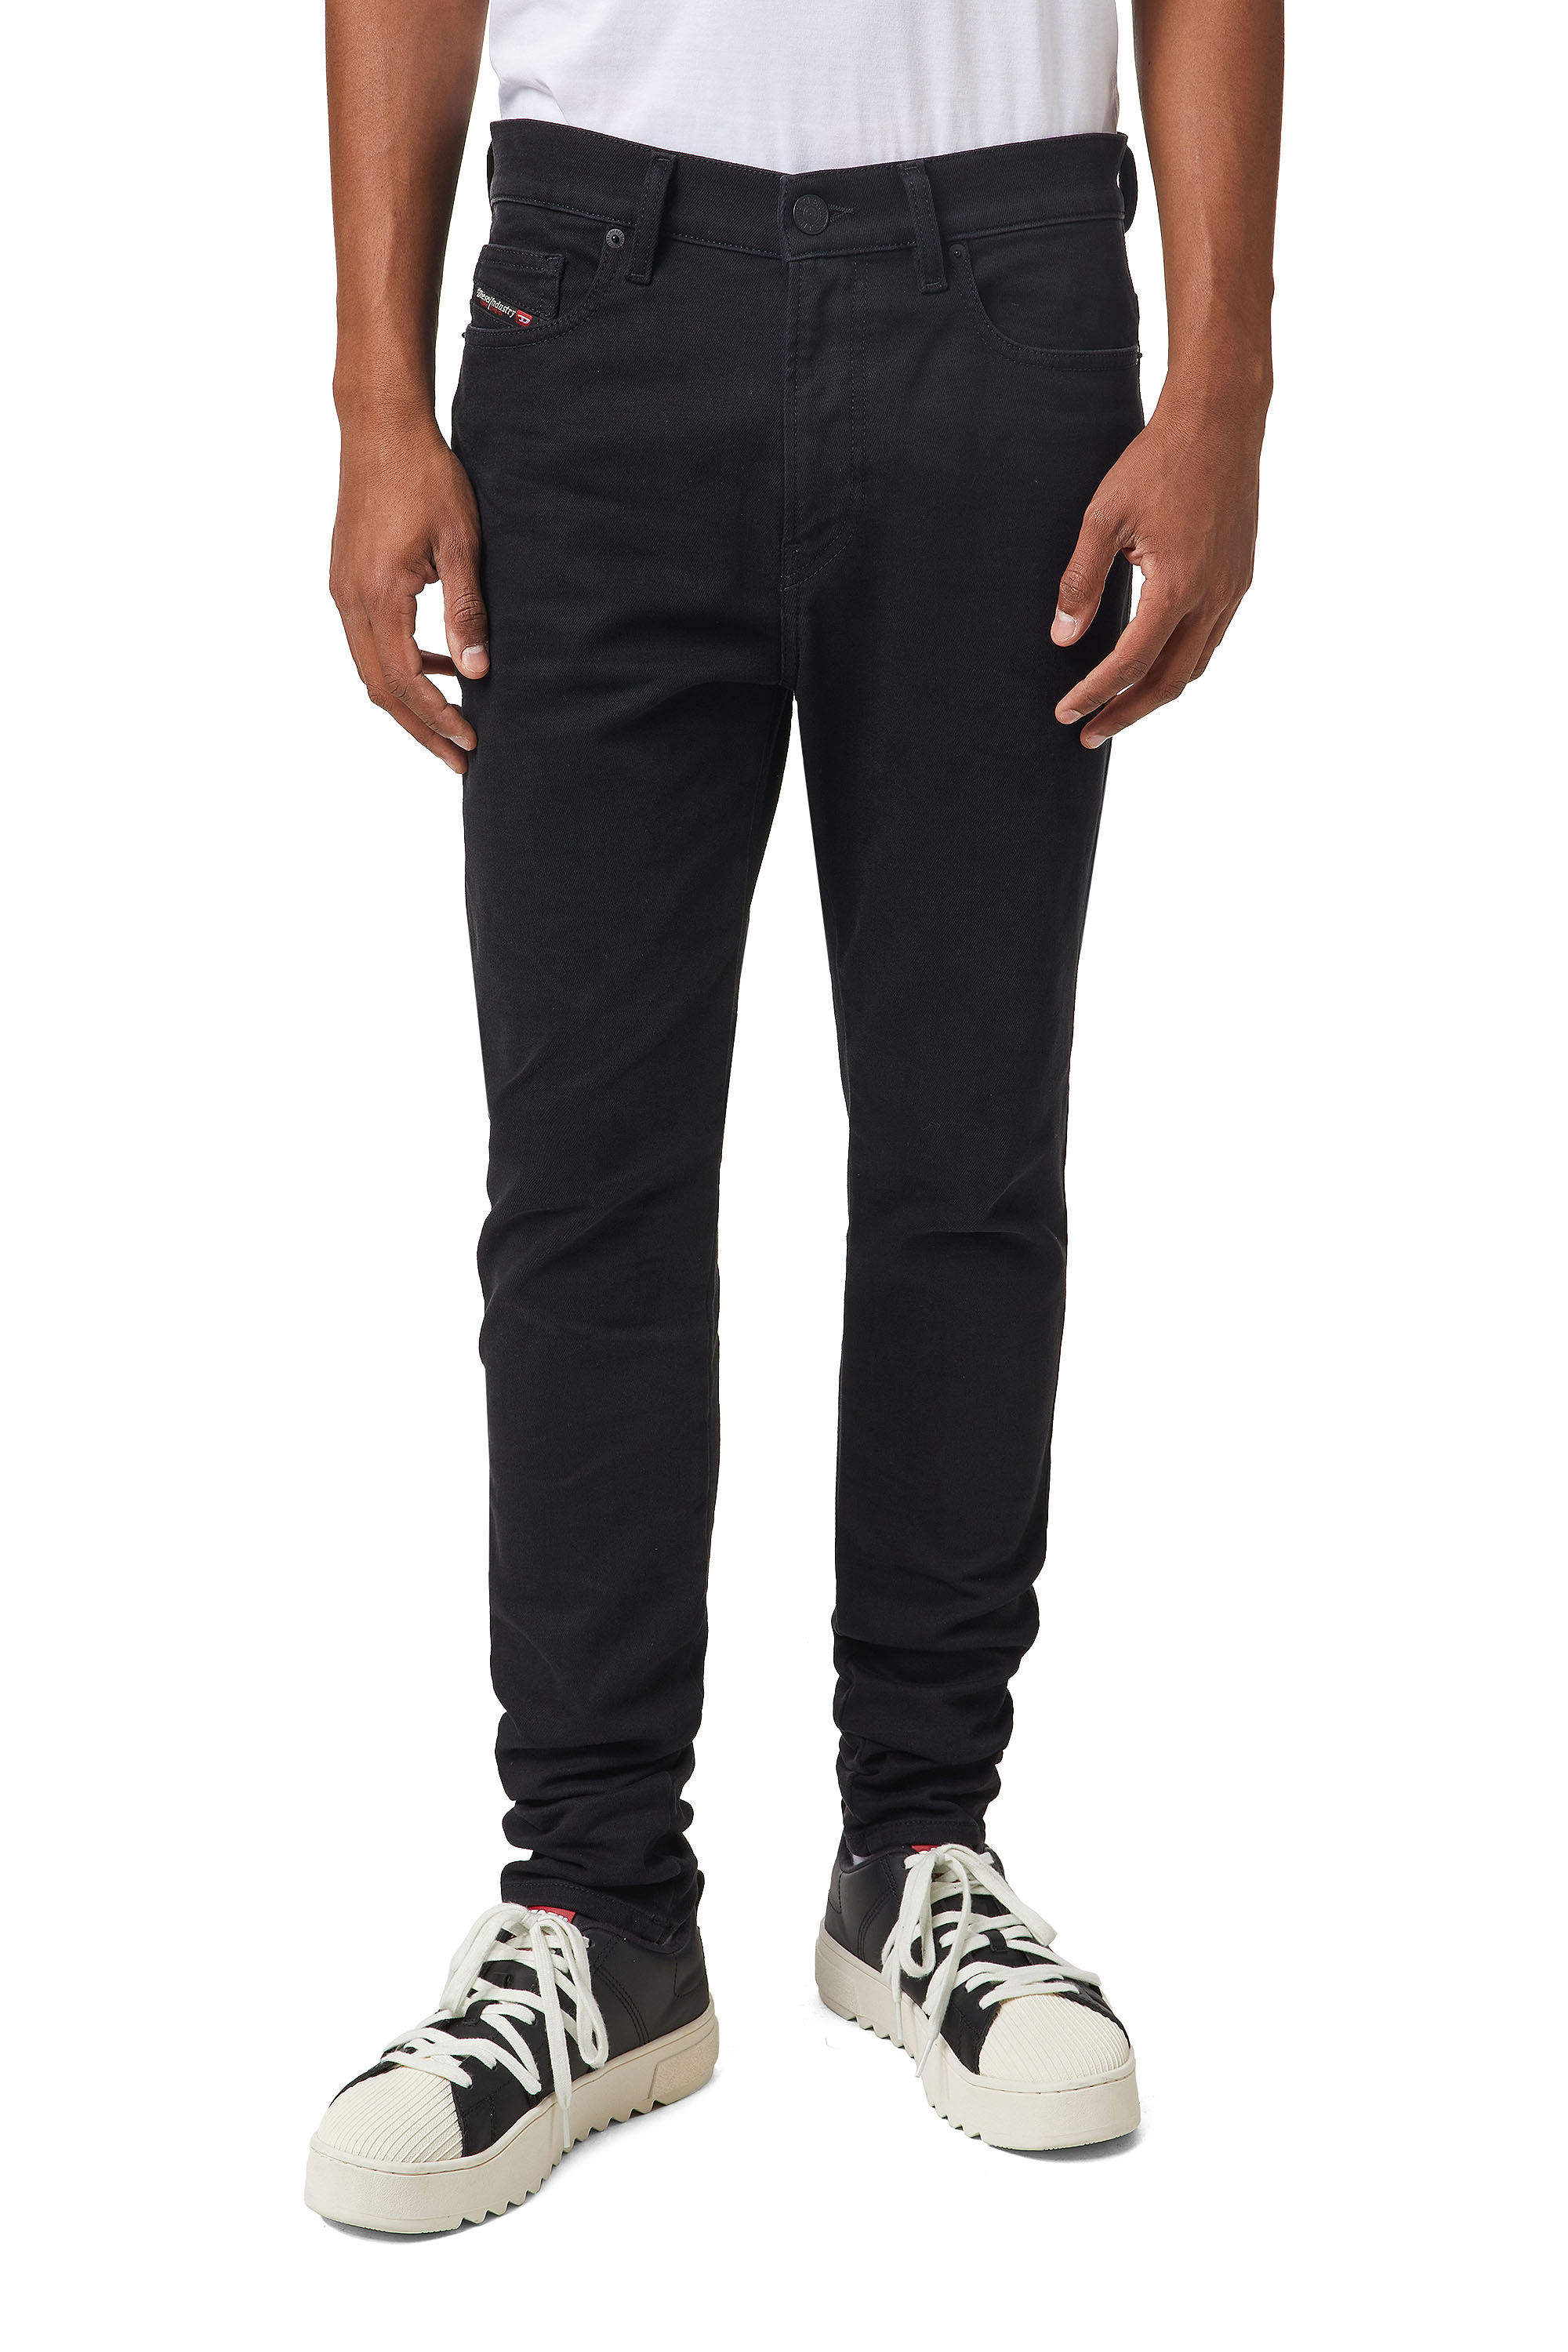 Diesel - D-Amny JoggJeans® Z9A29 Skinny, Black/Dark Grey - Image 2